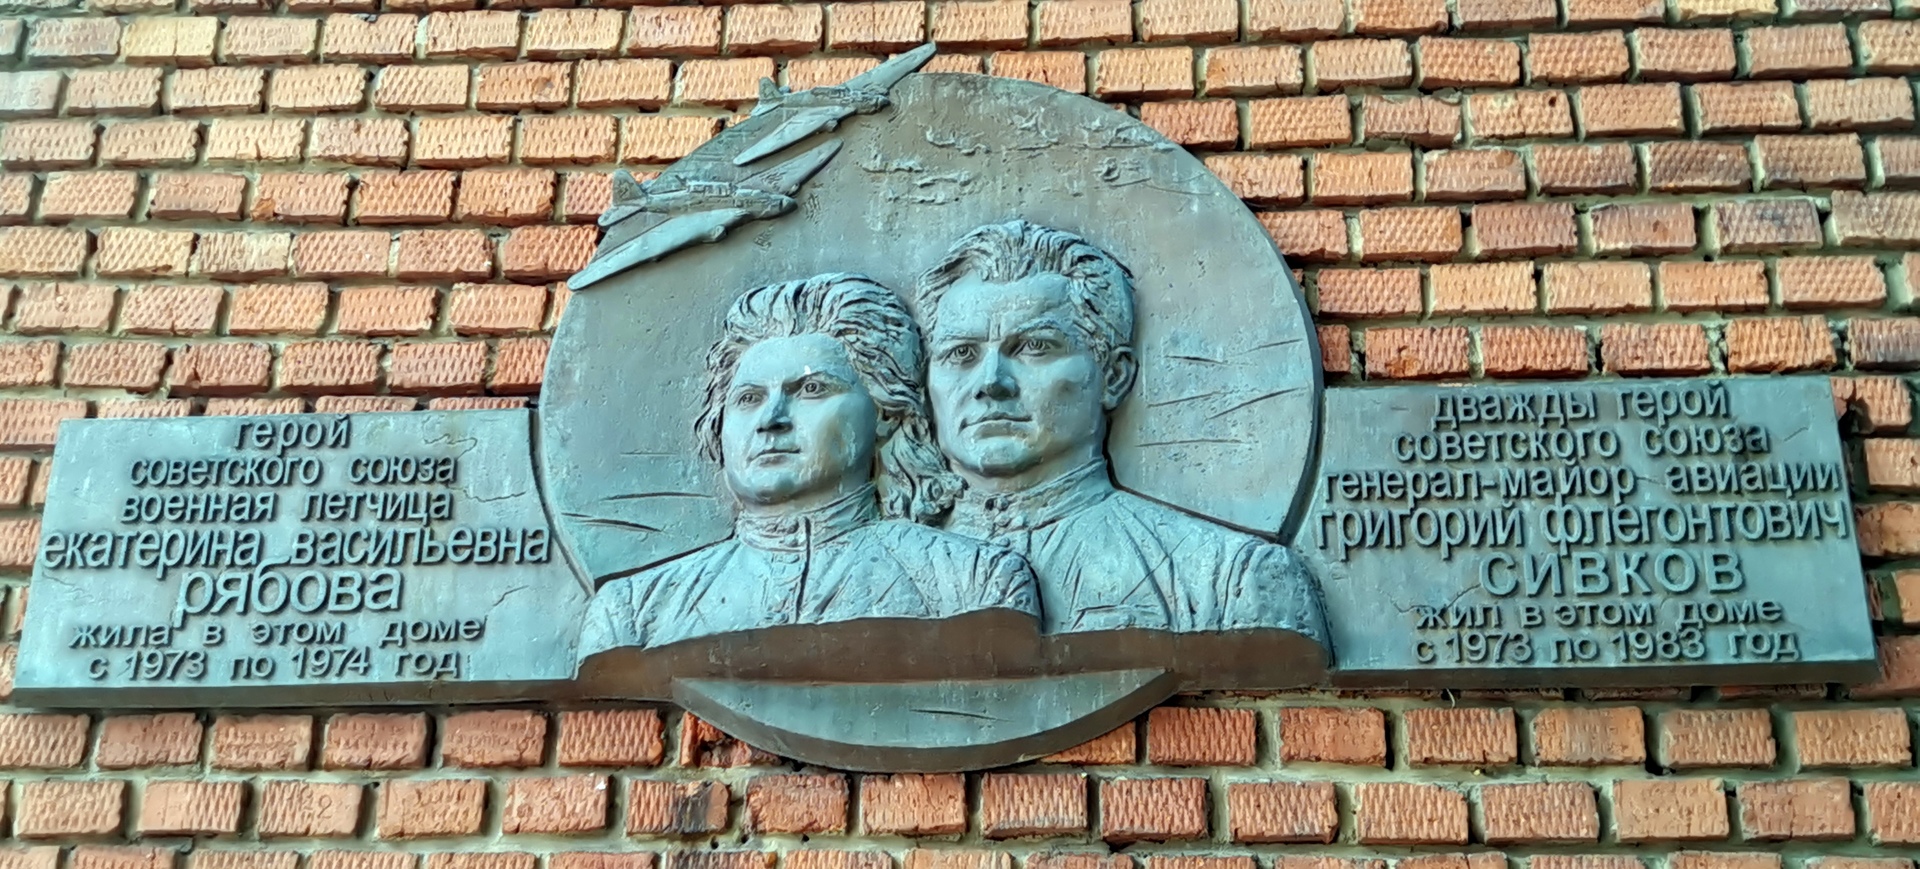 Мемориальная доска имени Сергея Рябова в Самаре